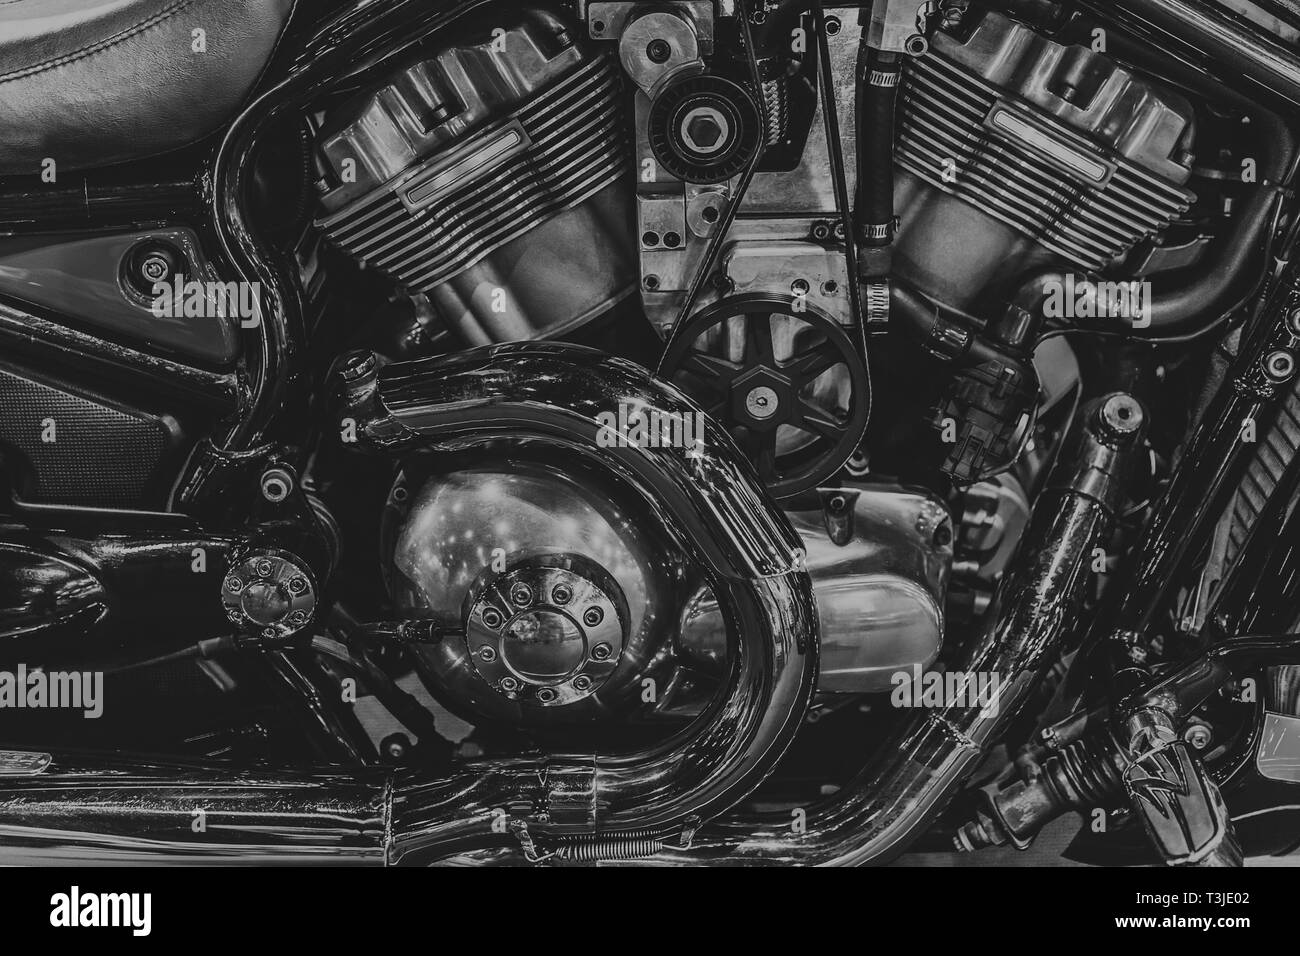 Le moteur du broyeur moto noir et blanc v-twin block. Banque D'Images